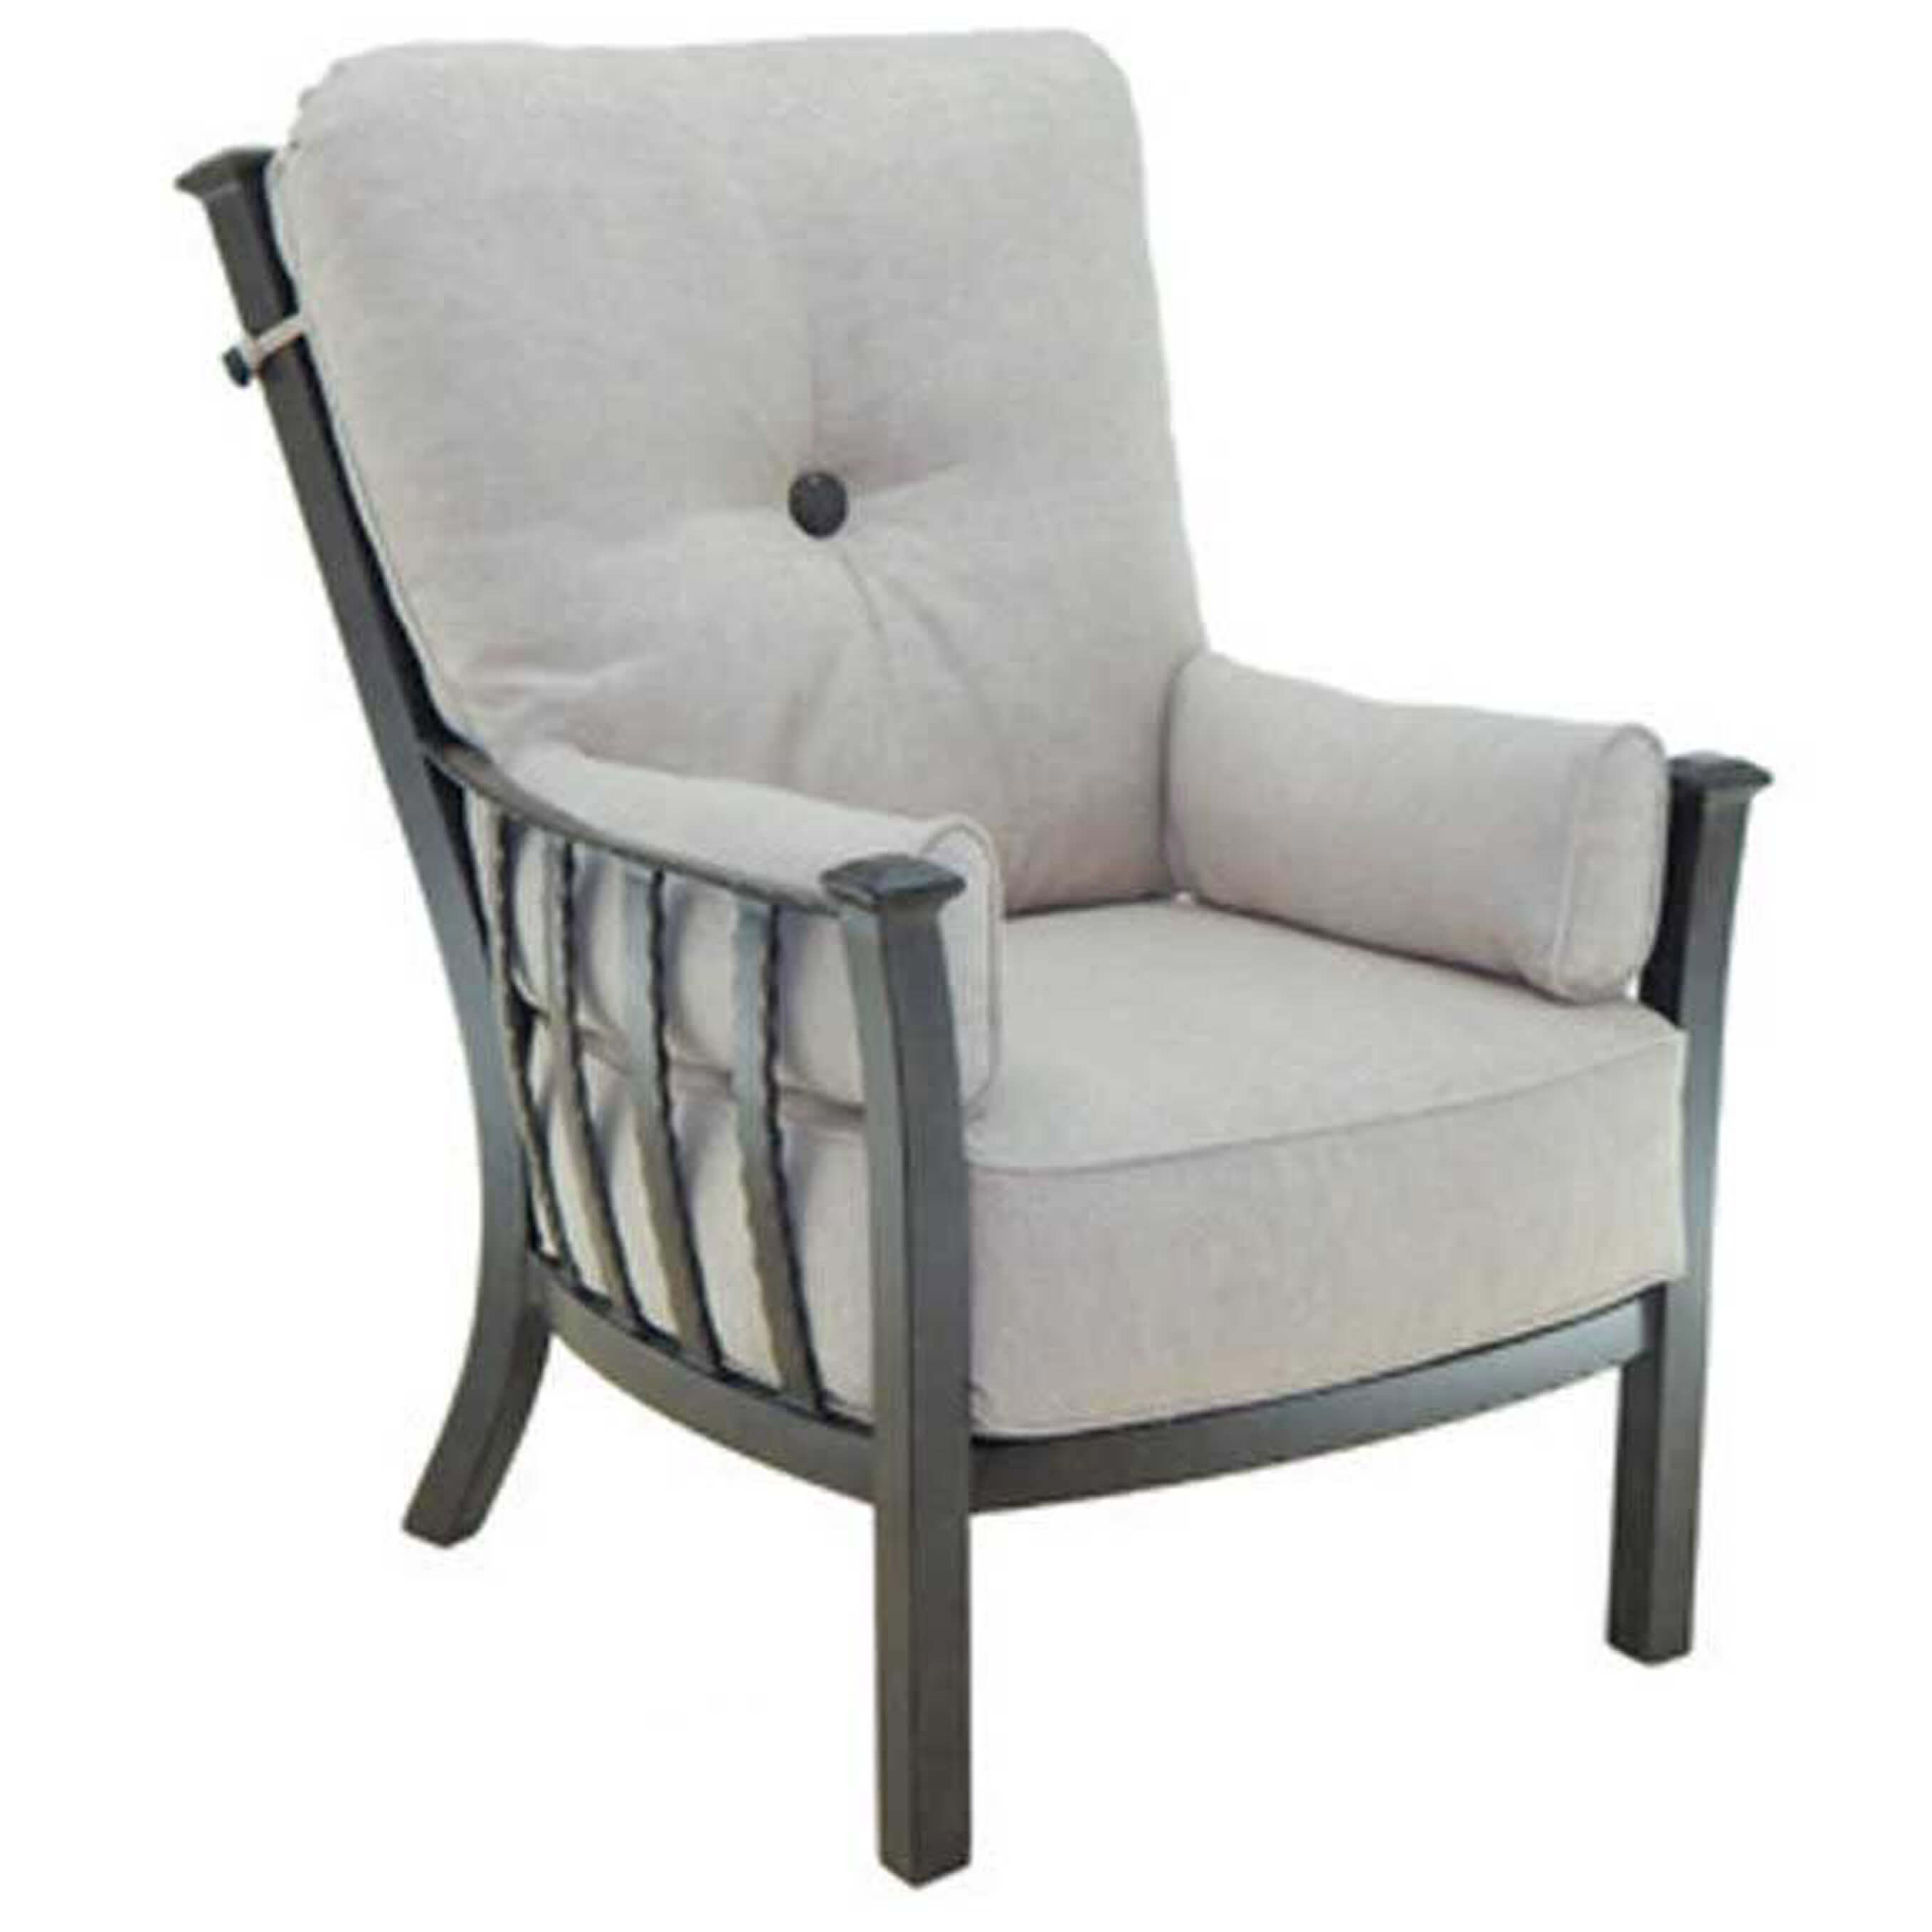 Santa Fe Cushion High Back Lounge Chair